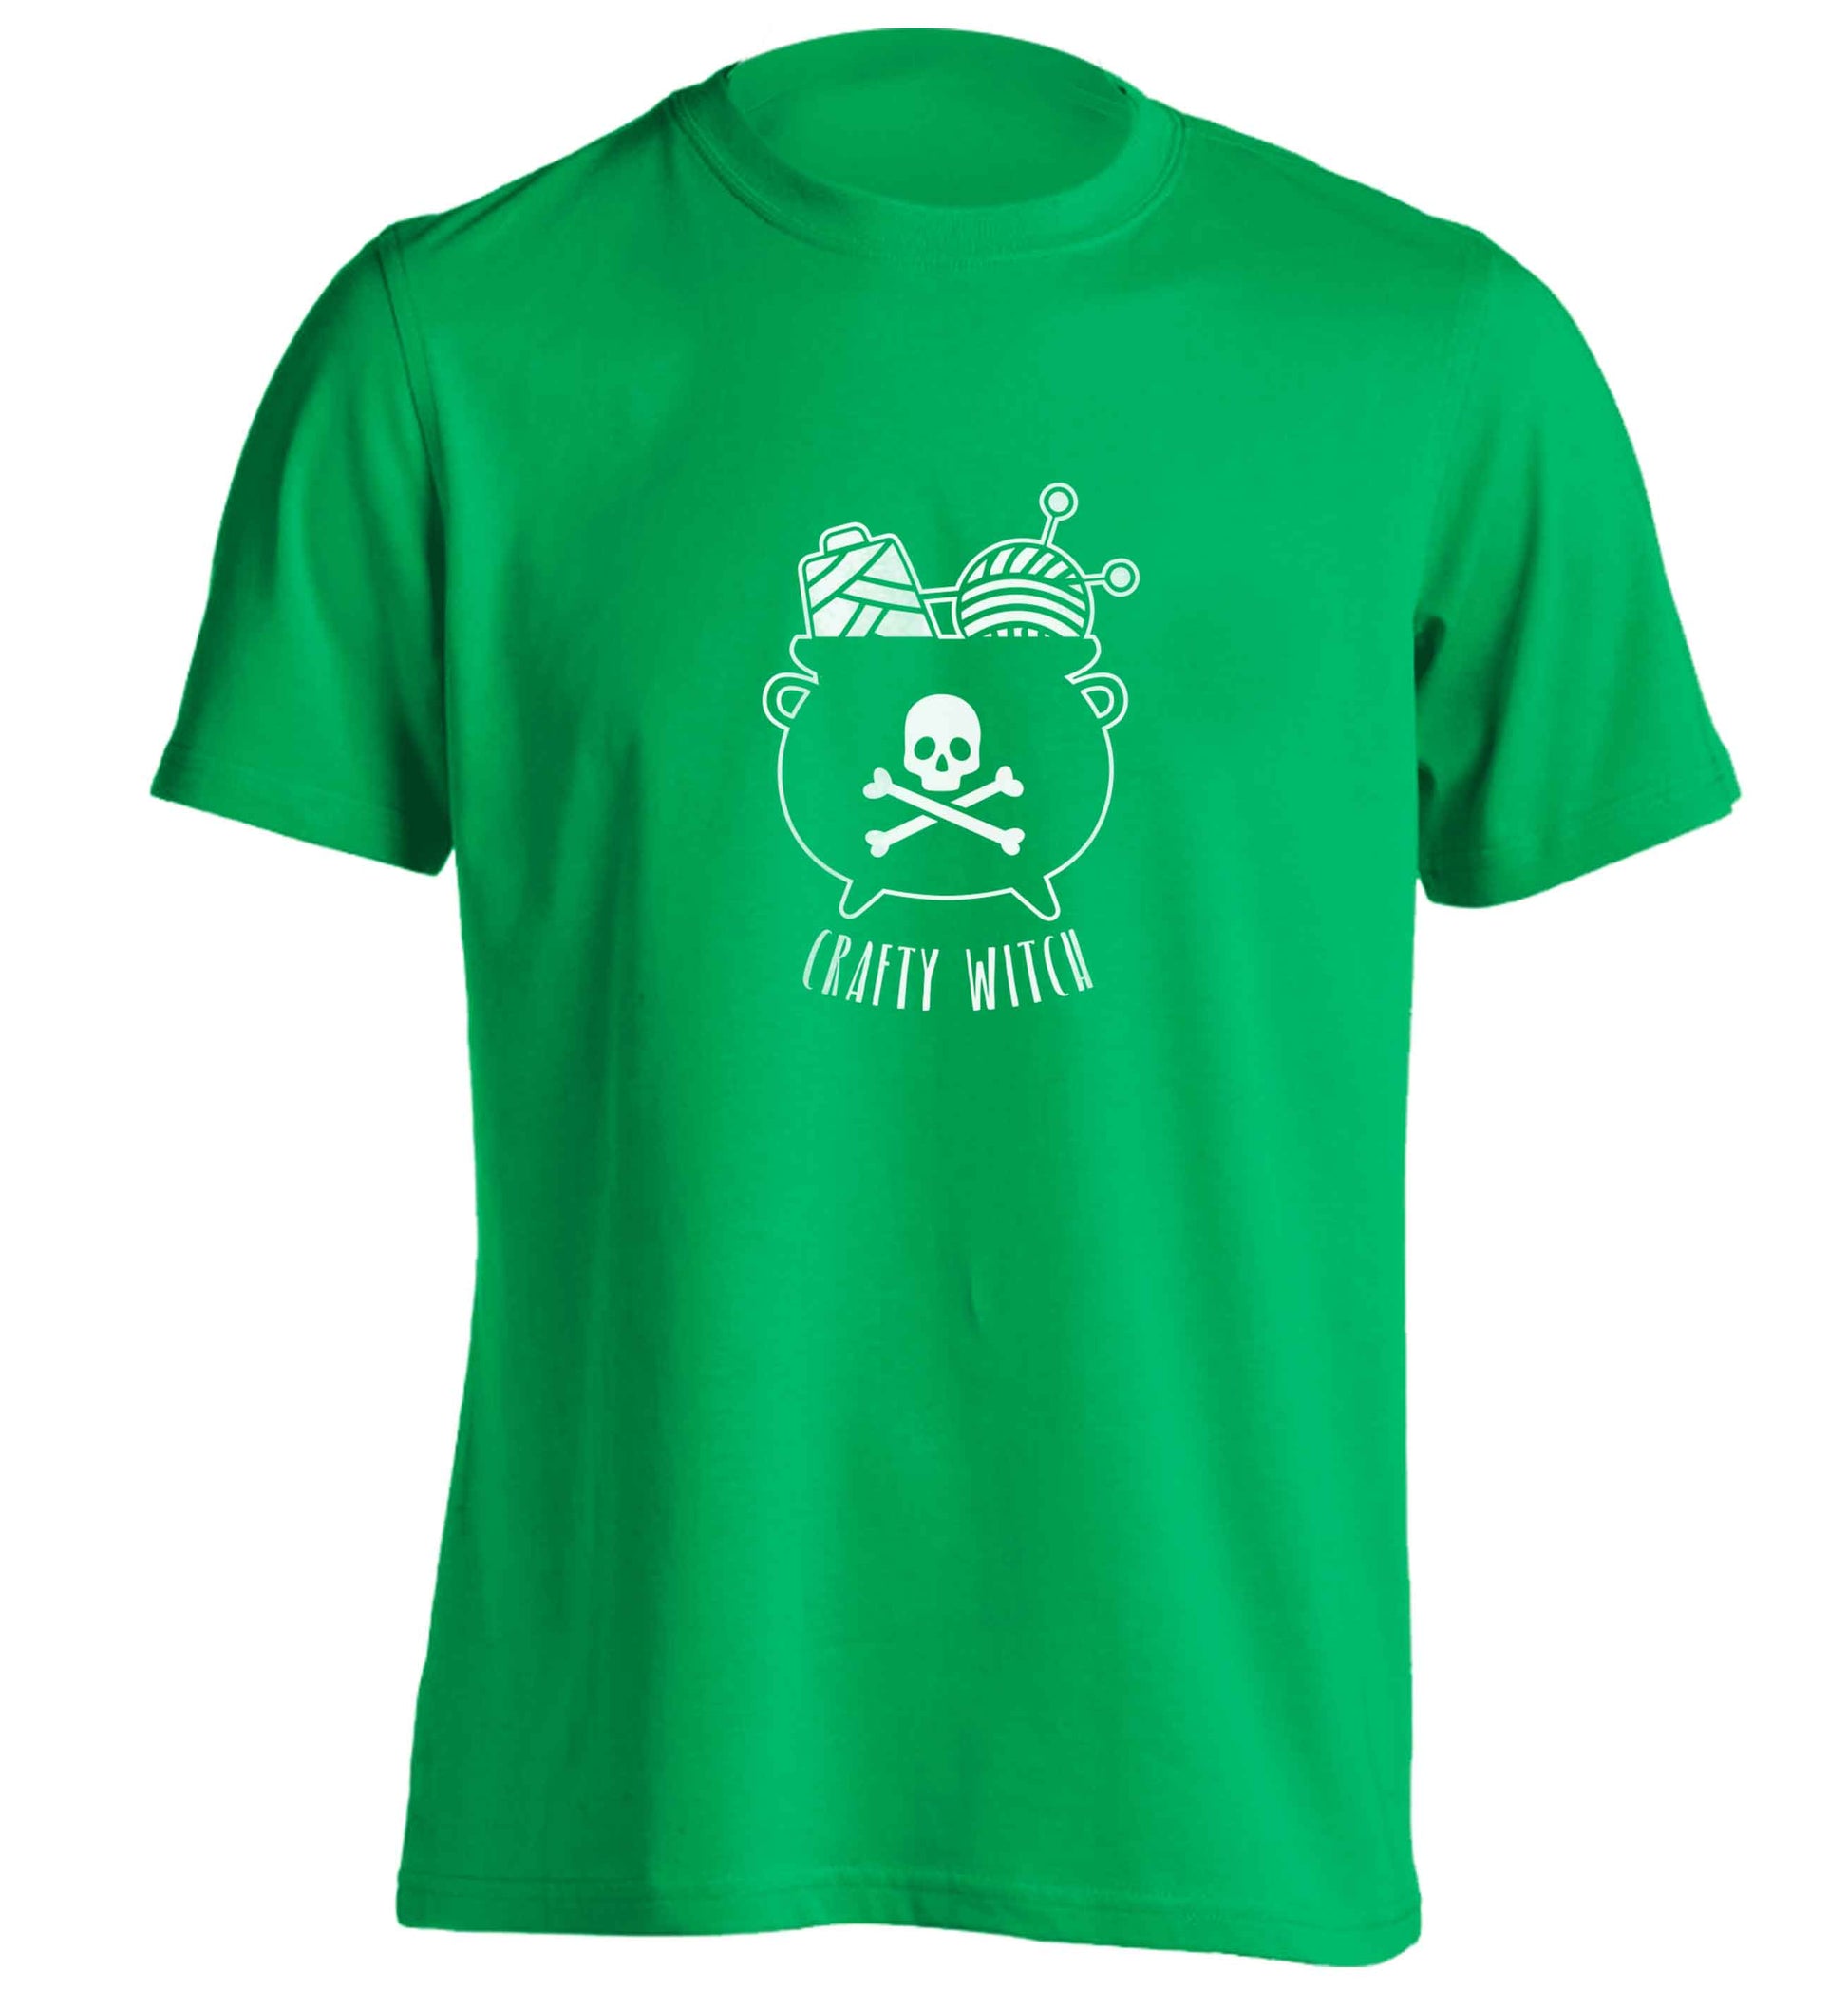 Crafty witch adults unisex green Tshirt 2XL